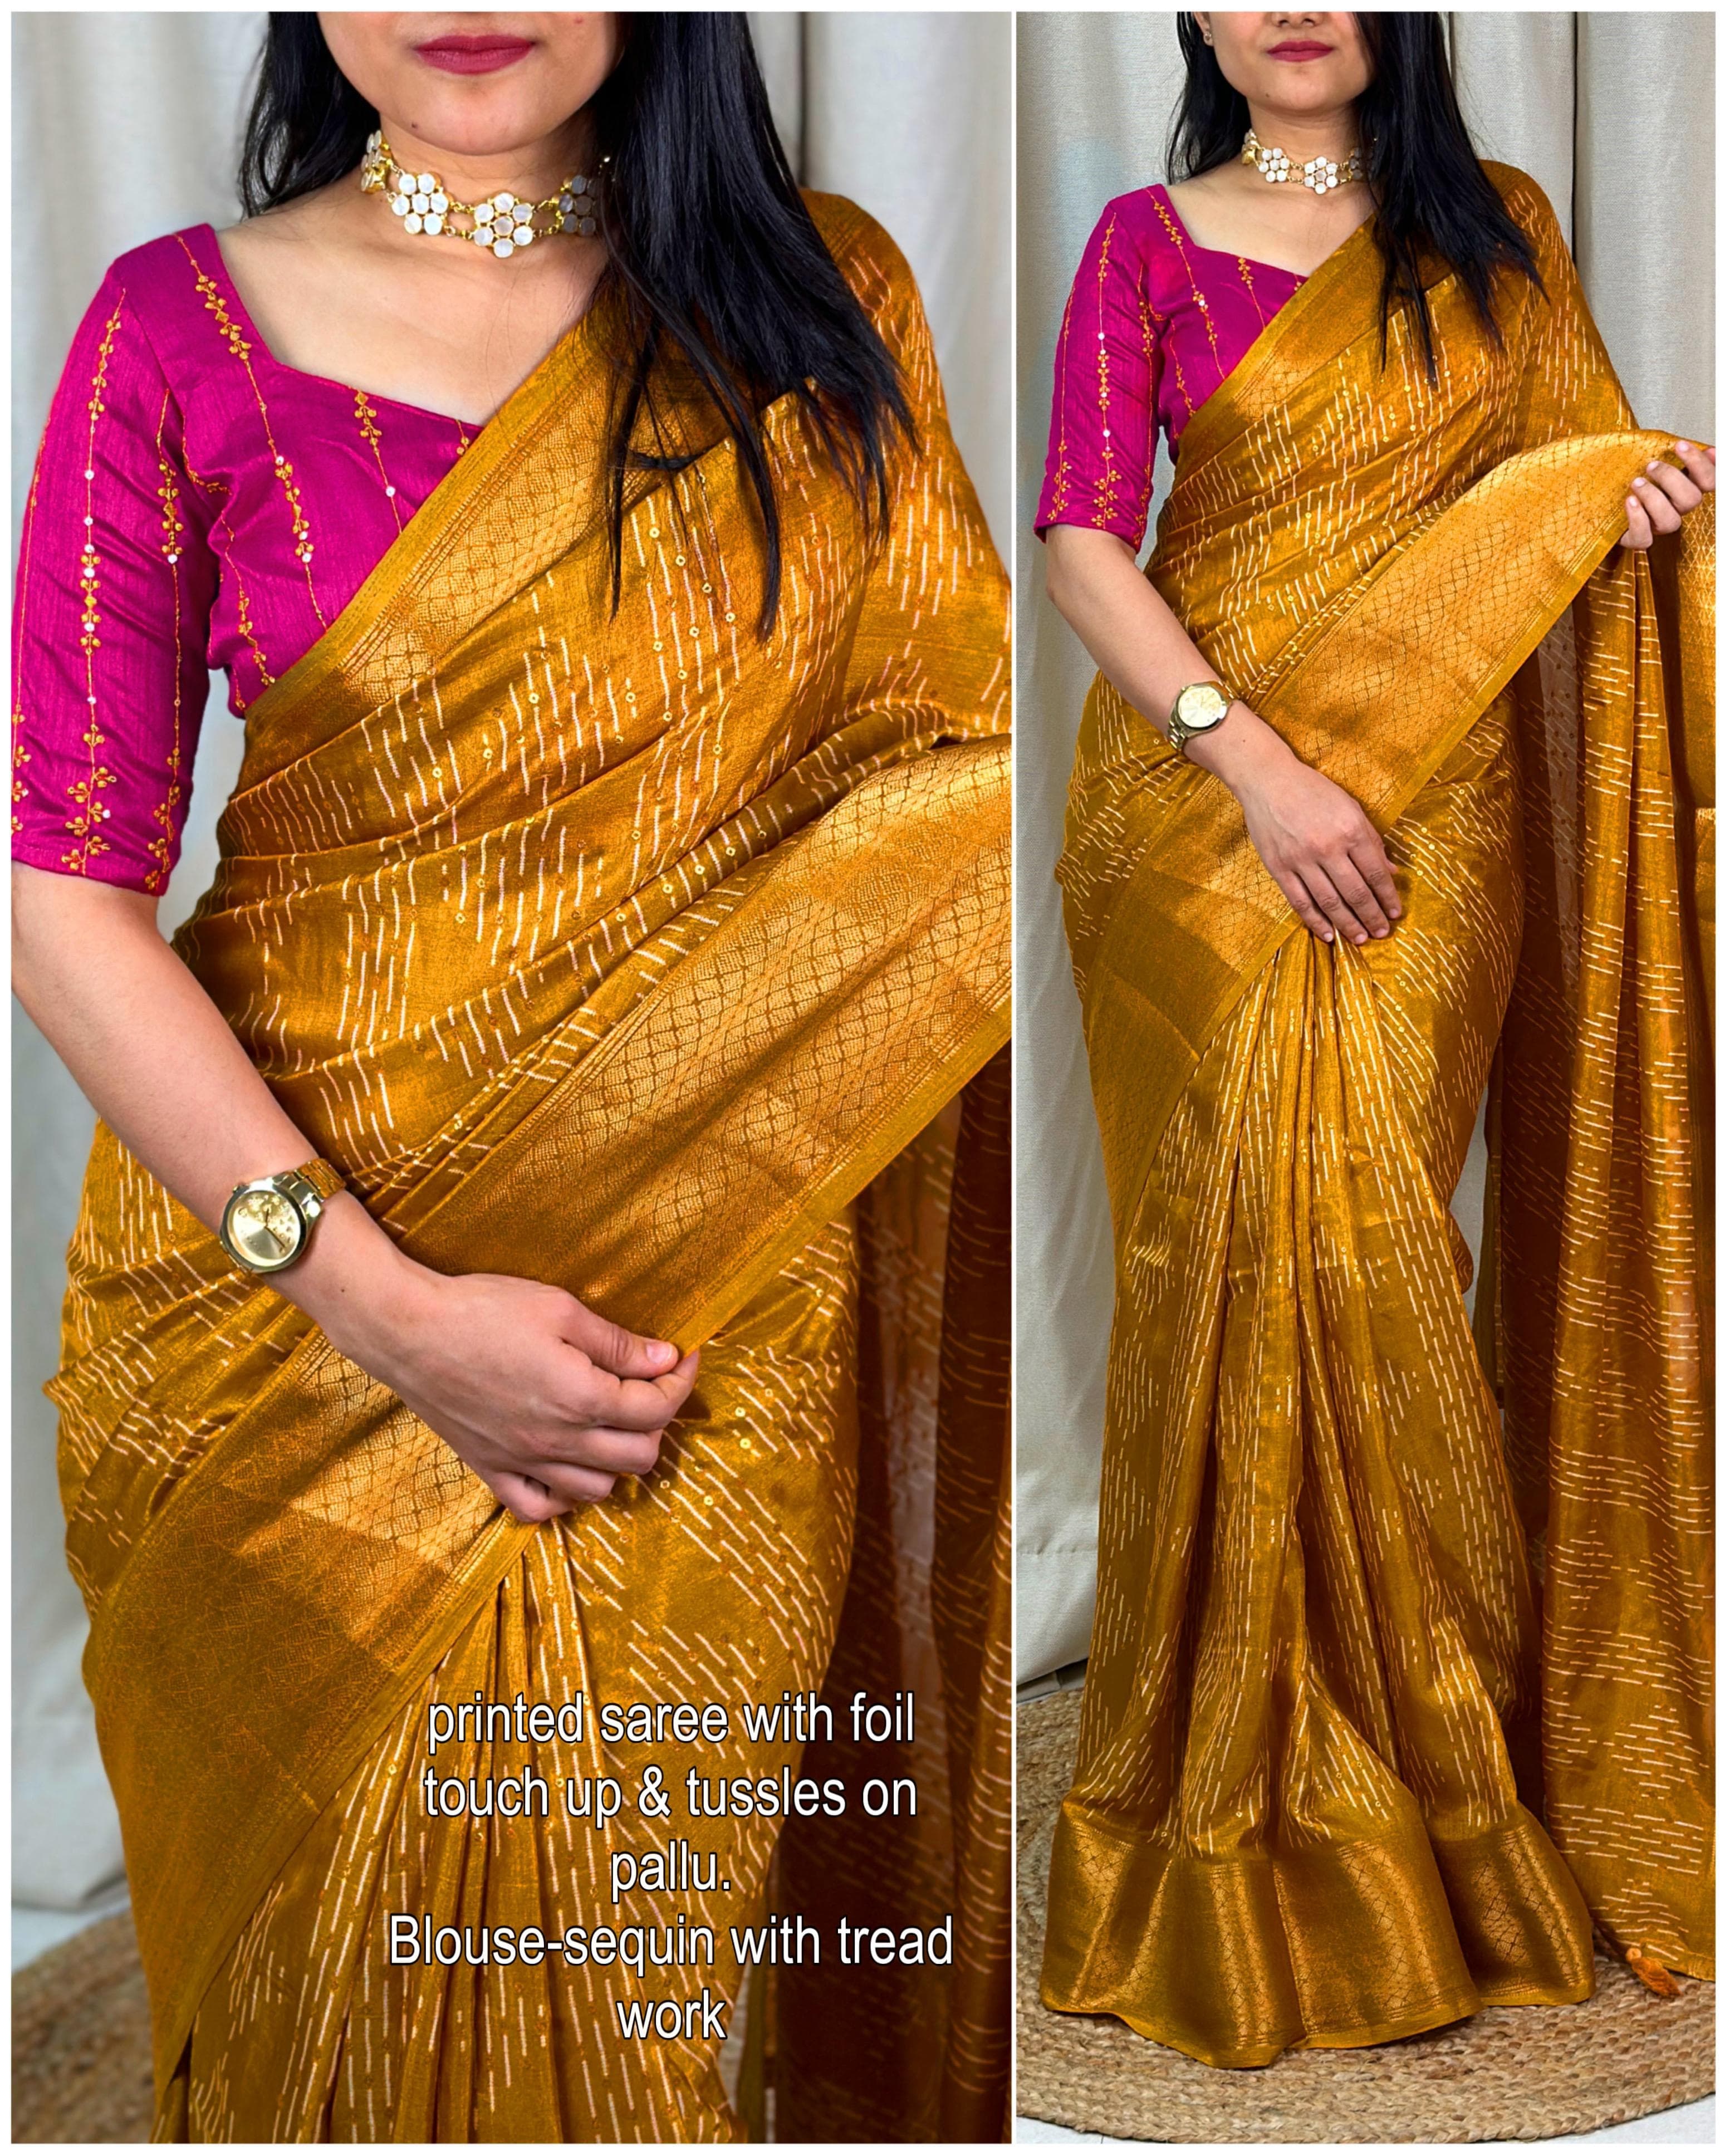 Banarasi Silk Islamic Wedding Clothing: Buy Banarasi Silk Islamic Wedding  Clothing for Women Online in USA